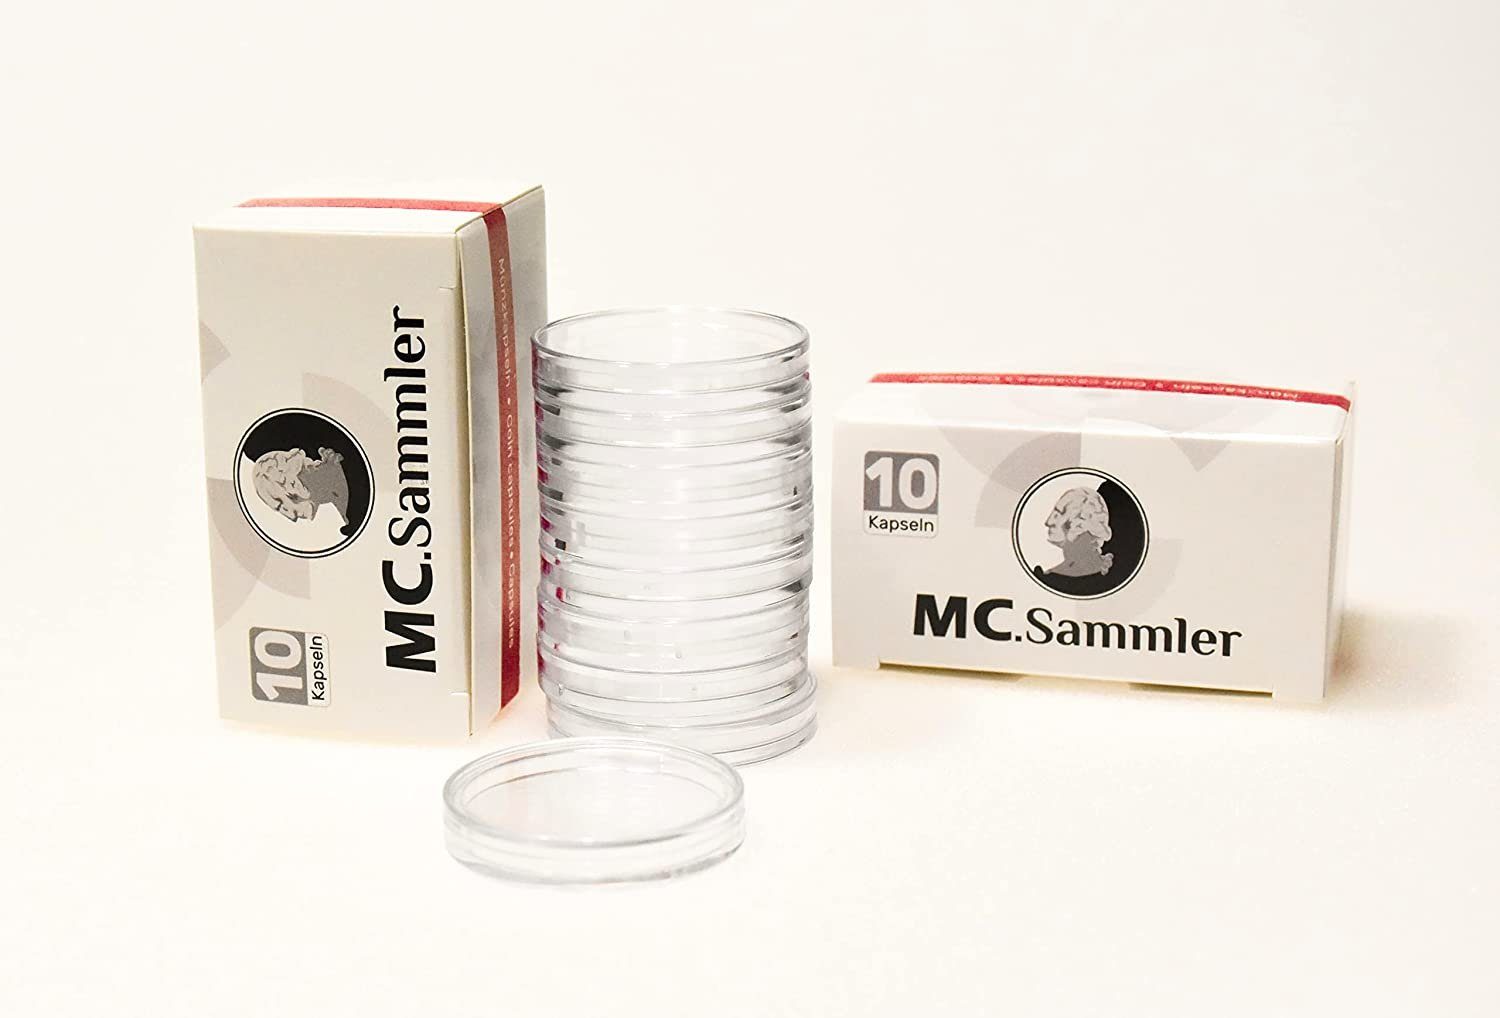 MC.Sammler Kapselhalter 10 Stück Münzkapseln 32,5mm | Kapselspender